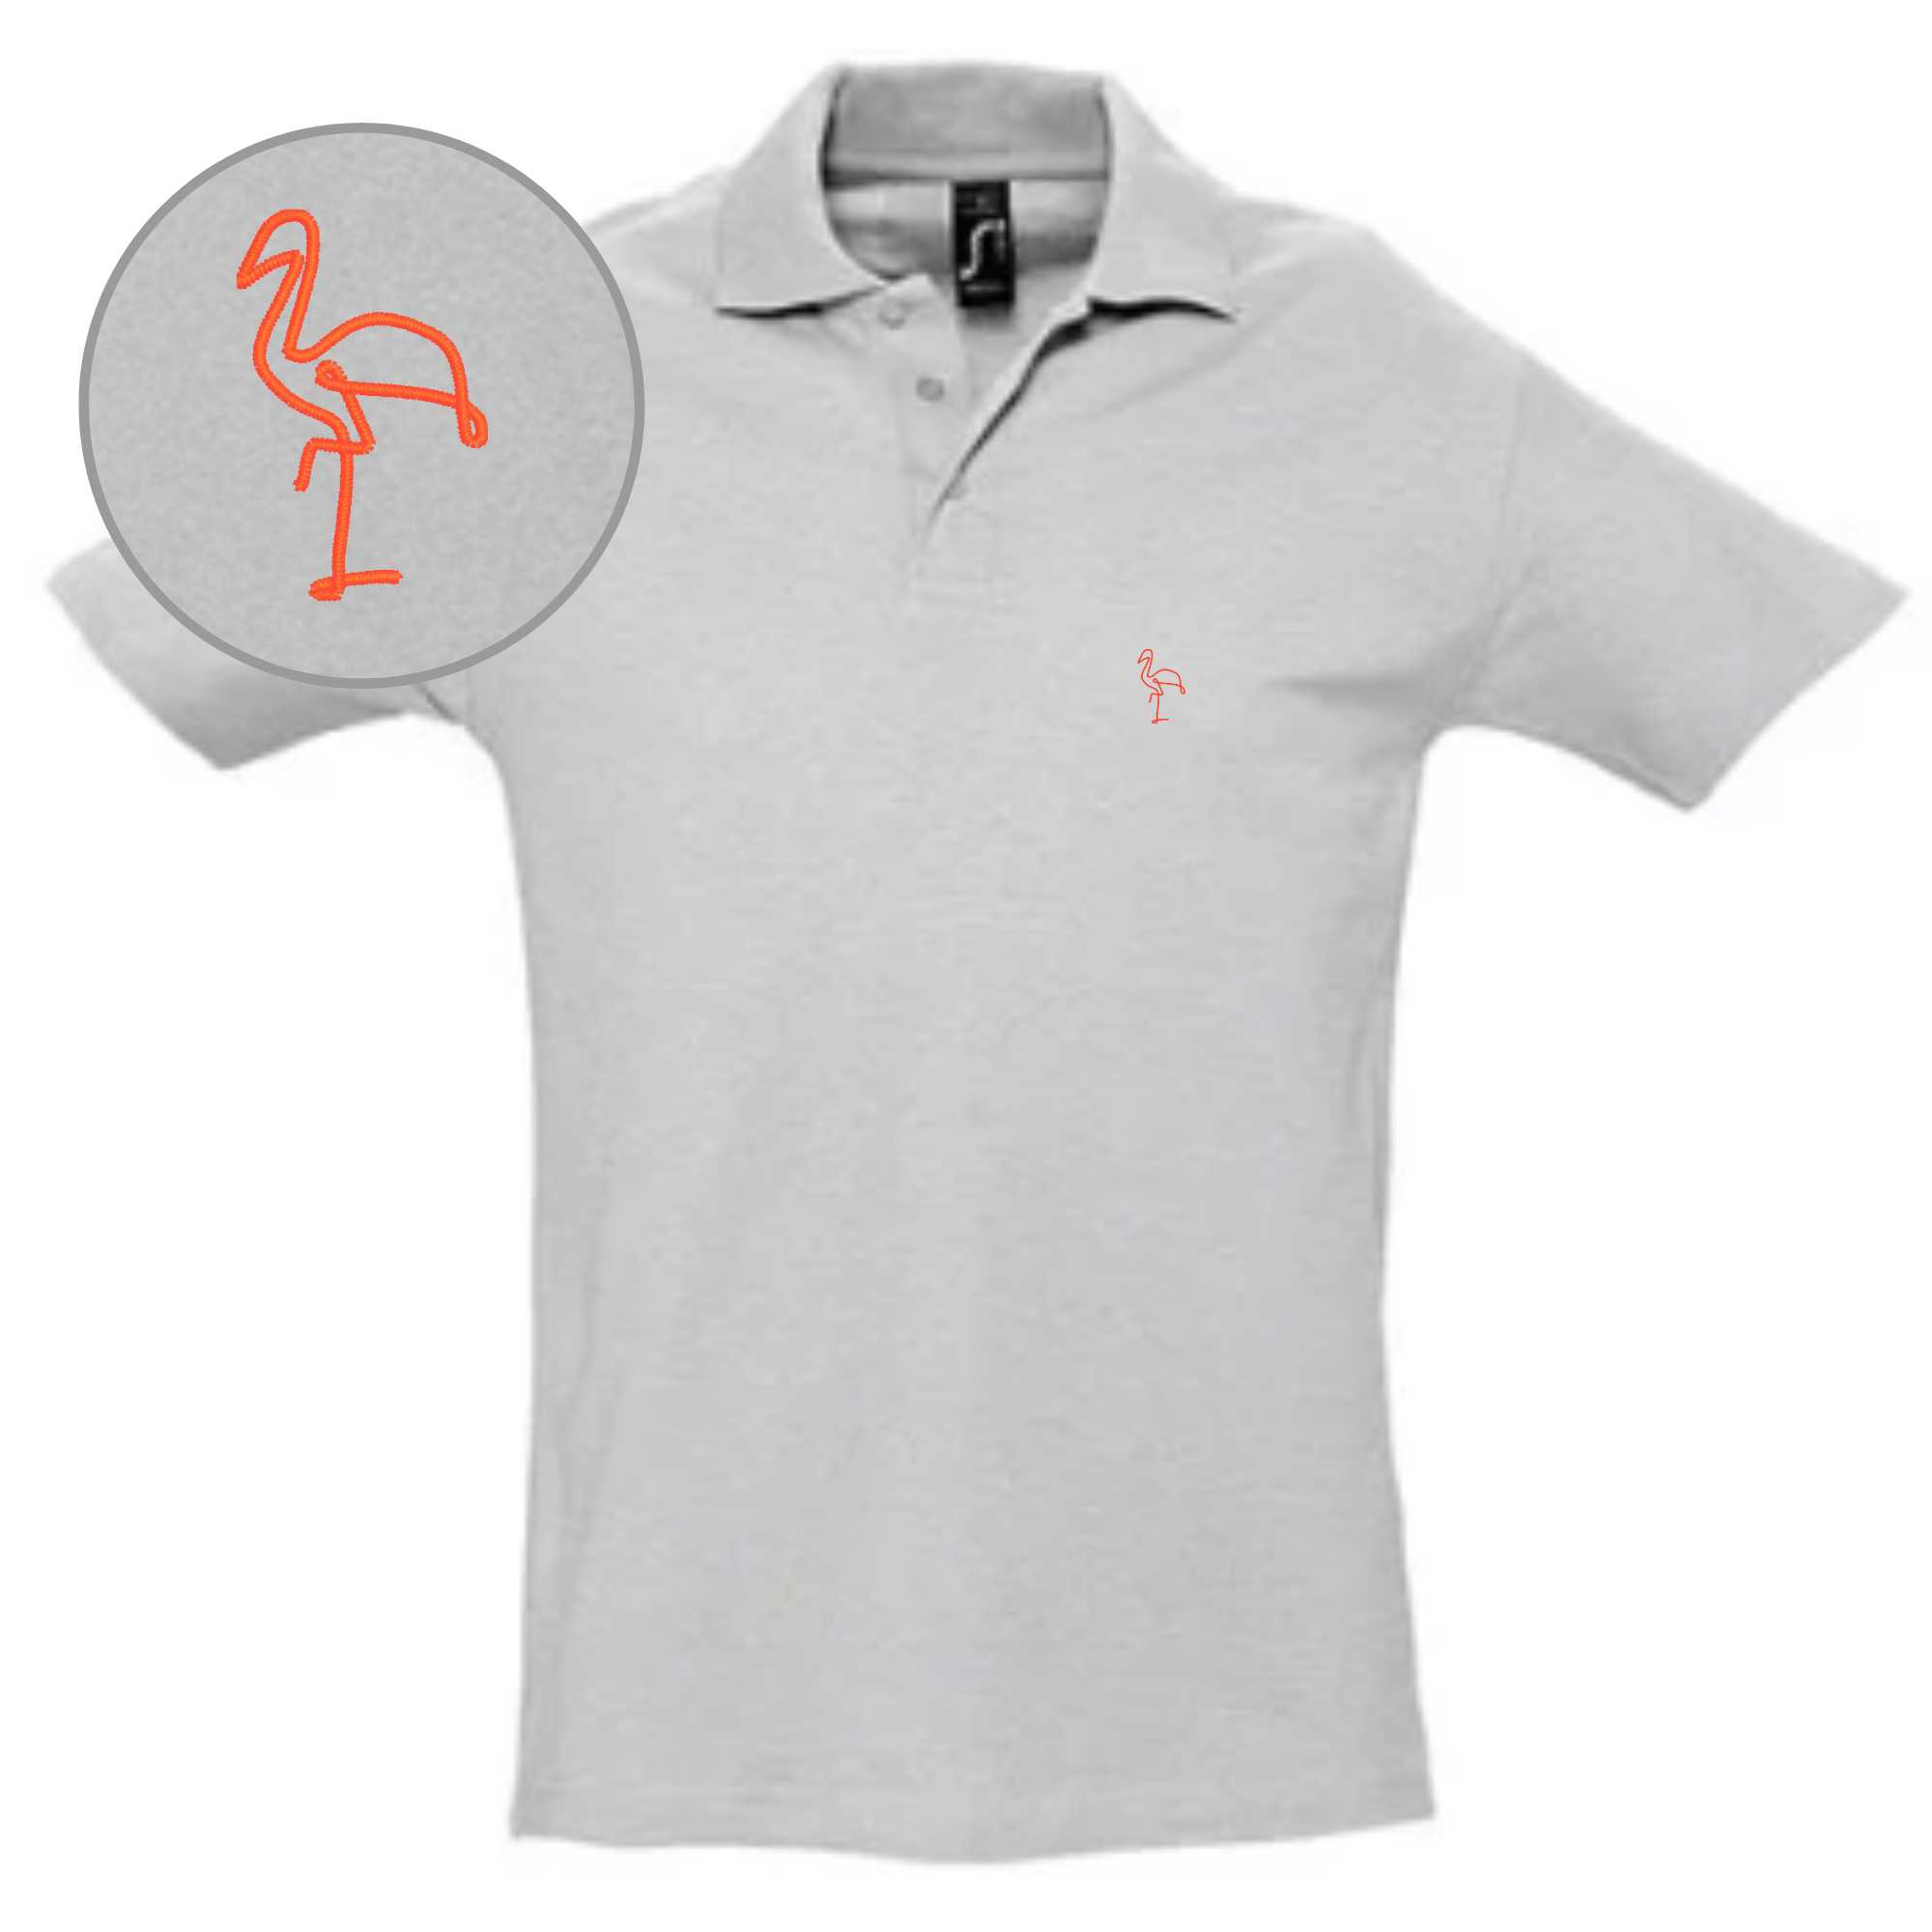 Poloshirts grau mit einem Flamingo-Stick als Motiv auf die Brust gestickt für Herren